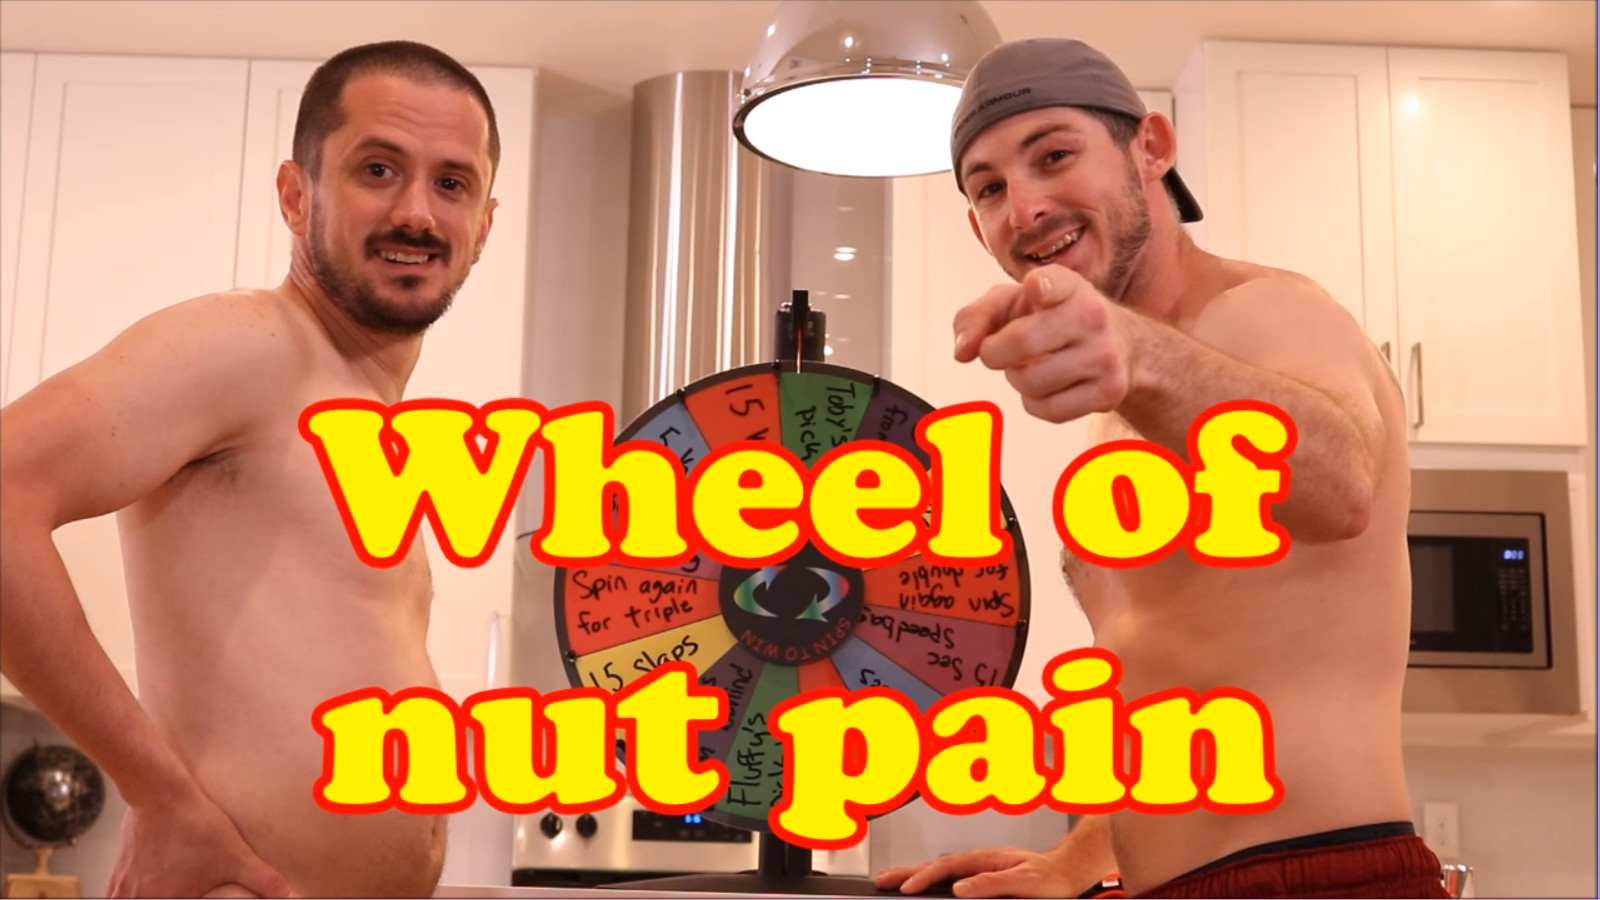 BallbustingBoys.org: Wheel of nut pain (Extended trailer)